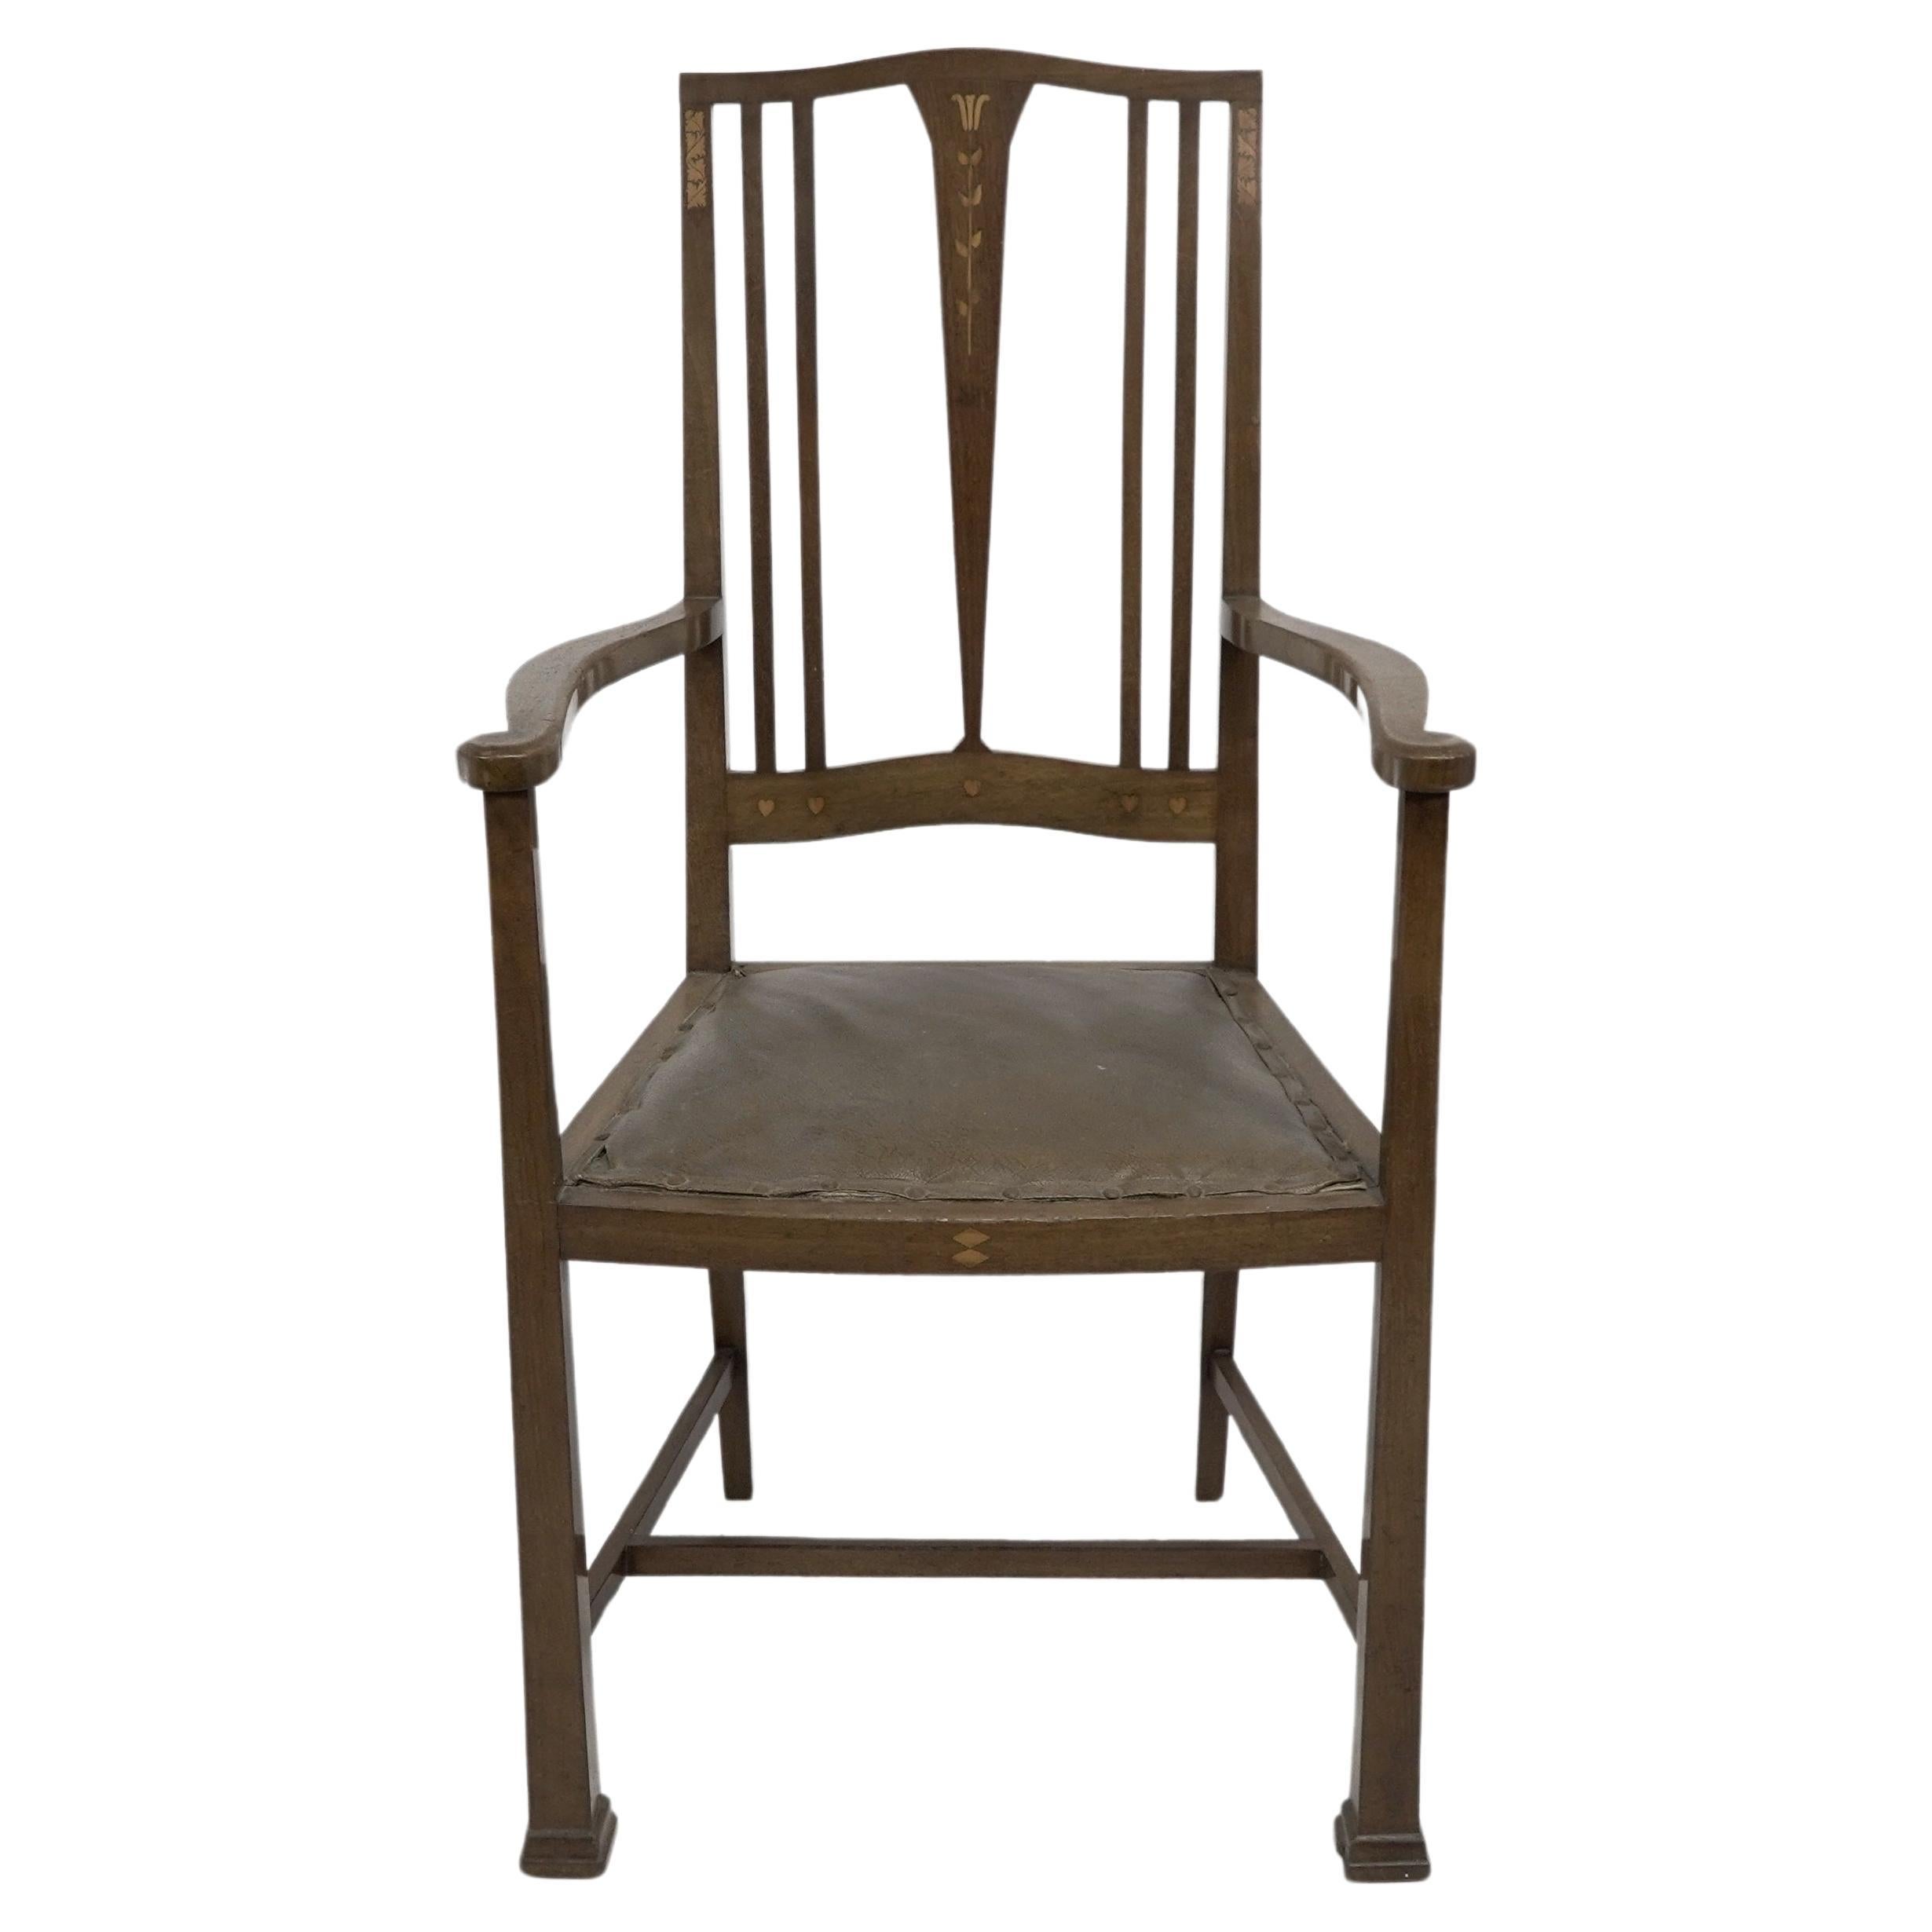 Liberty & Co zugeschrieben, ein Arts & Crafts Sessel aus Nussbaum, eingelegt mit kleinen Herzen und subtilen floralen Intarsien auf dem Rücken und der Vorderseite.
